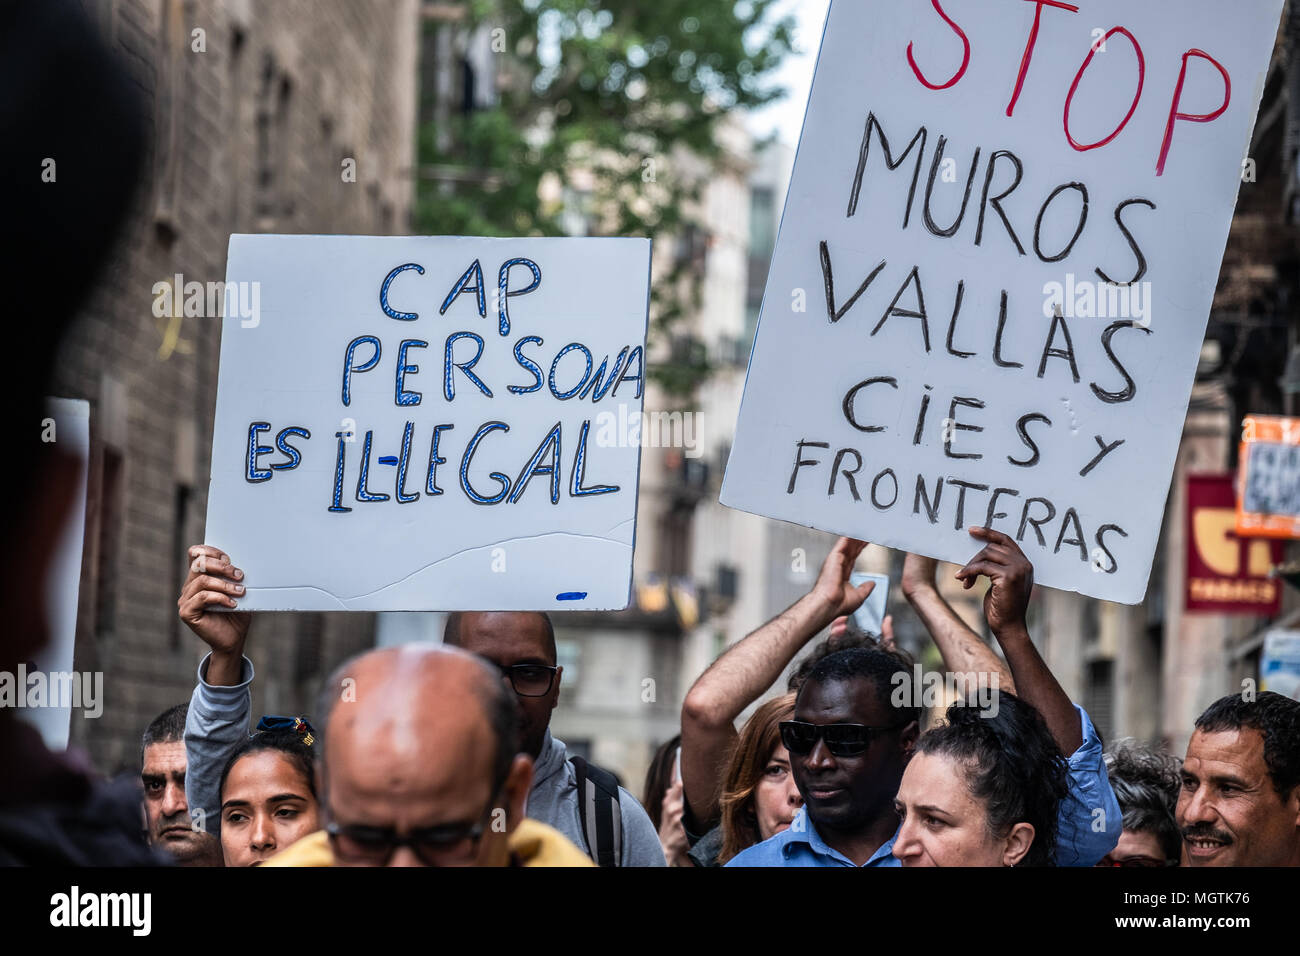 Barcelona, España. 28 abr, 2018. Varios manifestantes visto mostrando carteles pro derechos de inmigrantes y refugiados en Barcelona. Durante los últimos siete días, de inmigrantes "indocumentados" personas han sido encerrados en